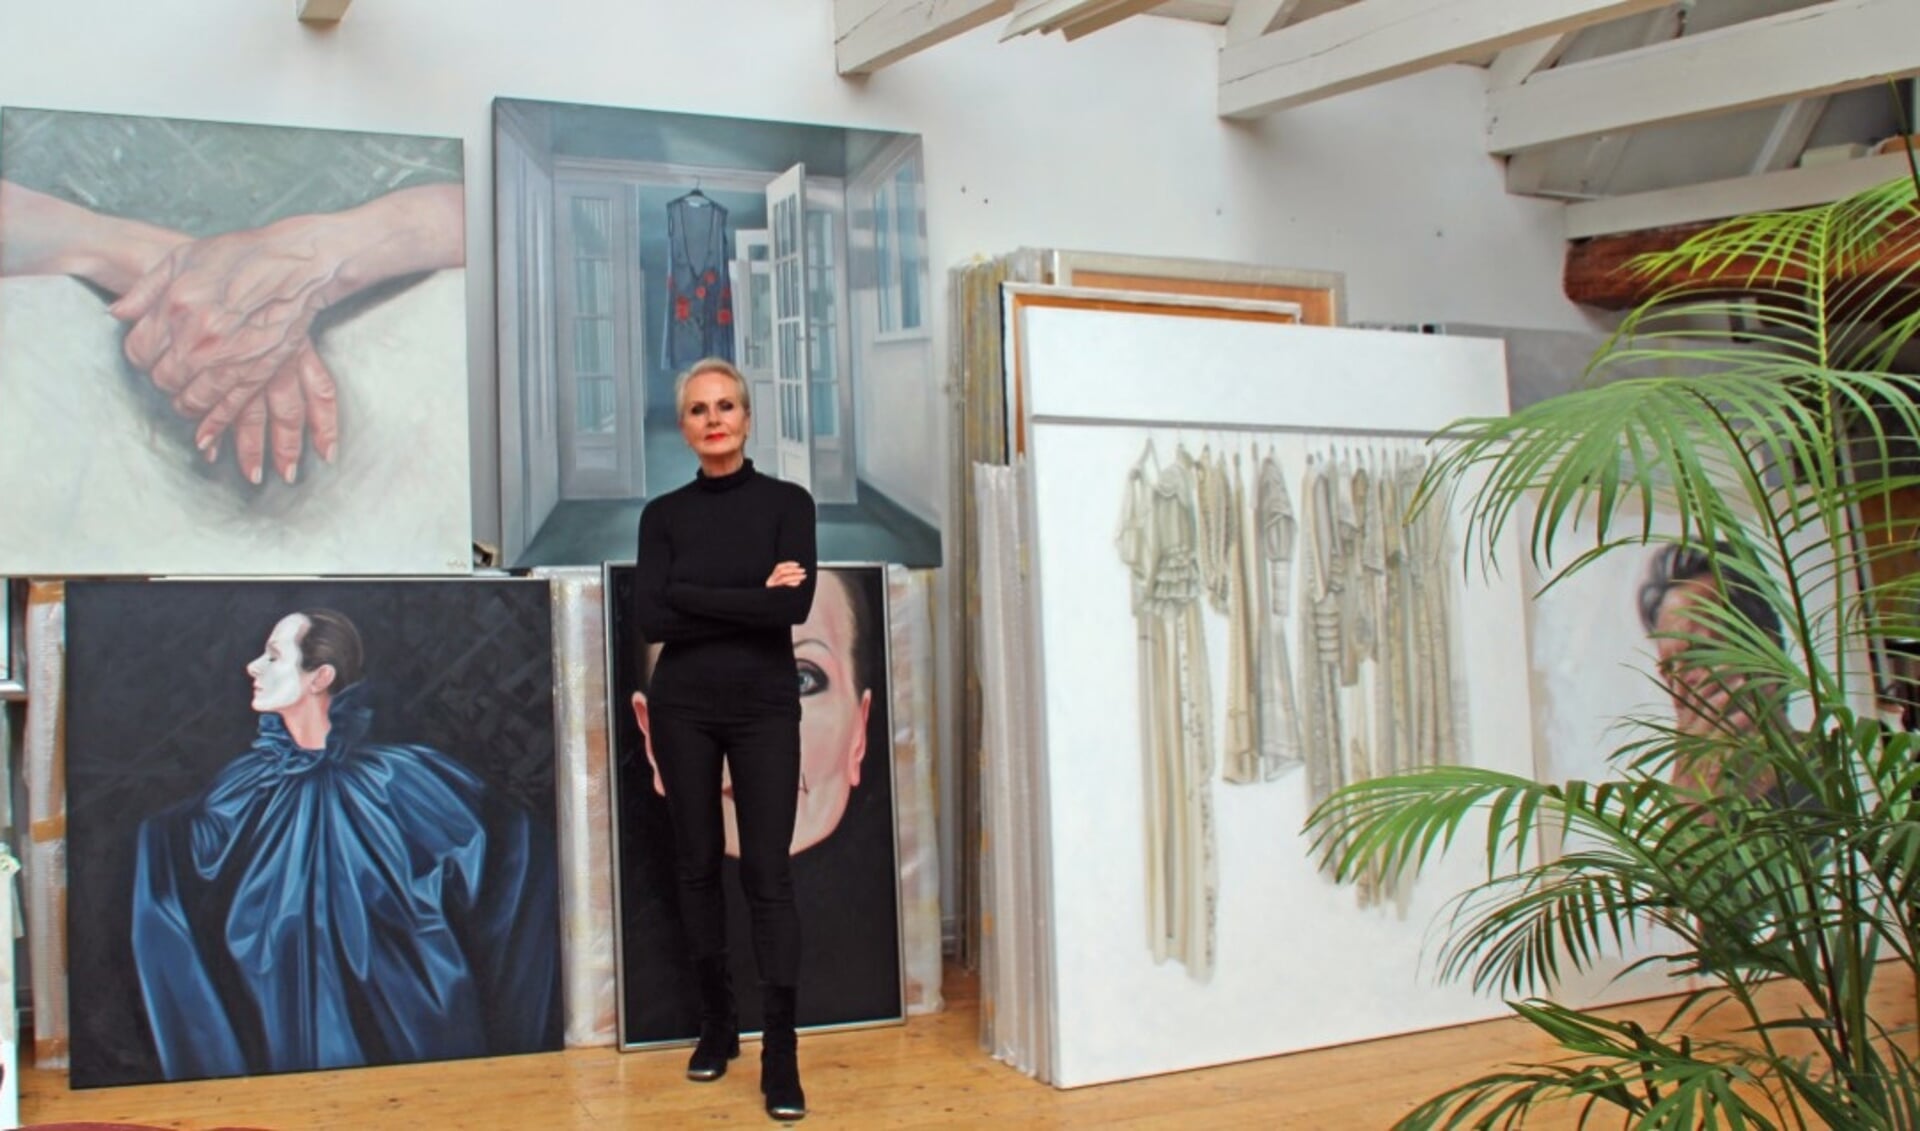 Ans Markus schildert en exposeert al 45 jaar. Zij verwierf bekendheid met haar herkenbare schilderkunst: vrouwen in windsels.